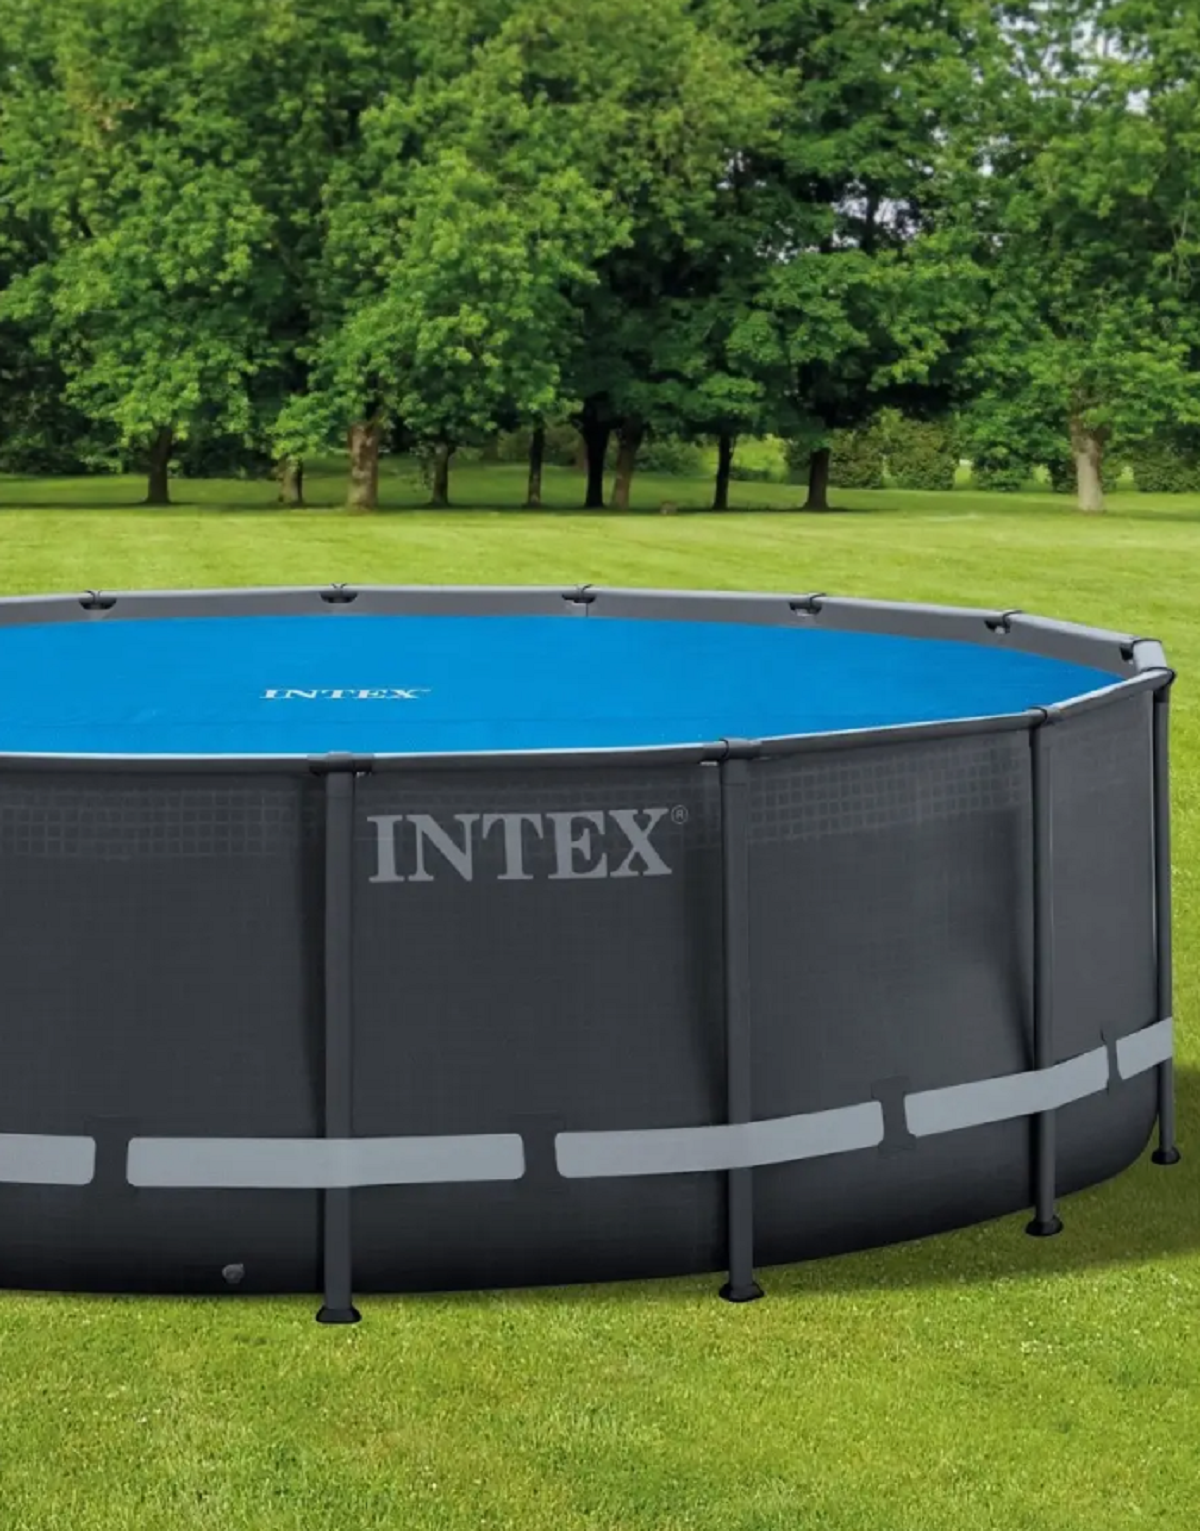 Тент для бассейна 488 см - покрывало пленка Intex Solar Cover 28014